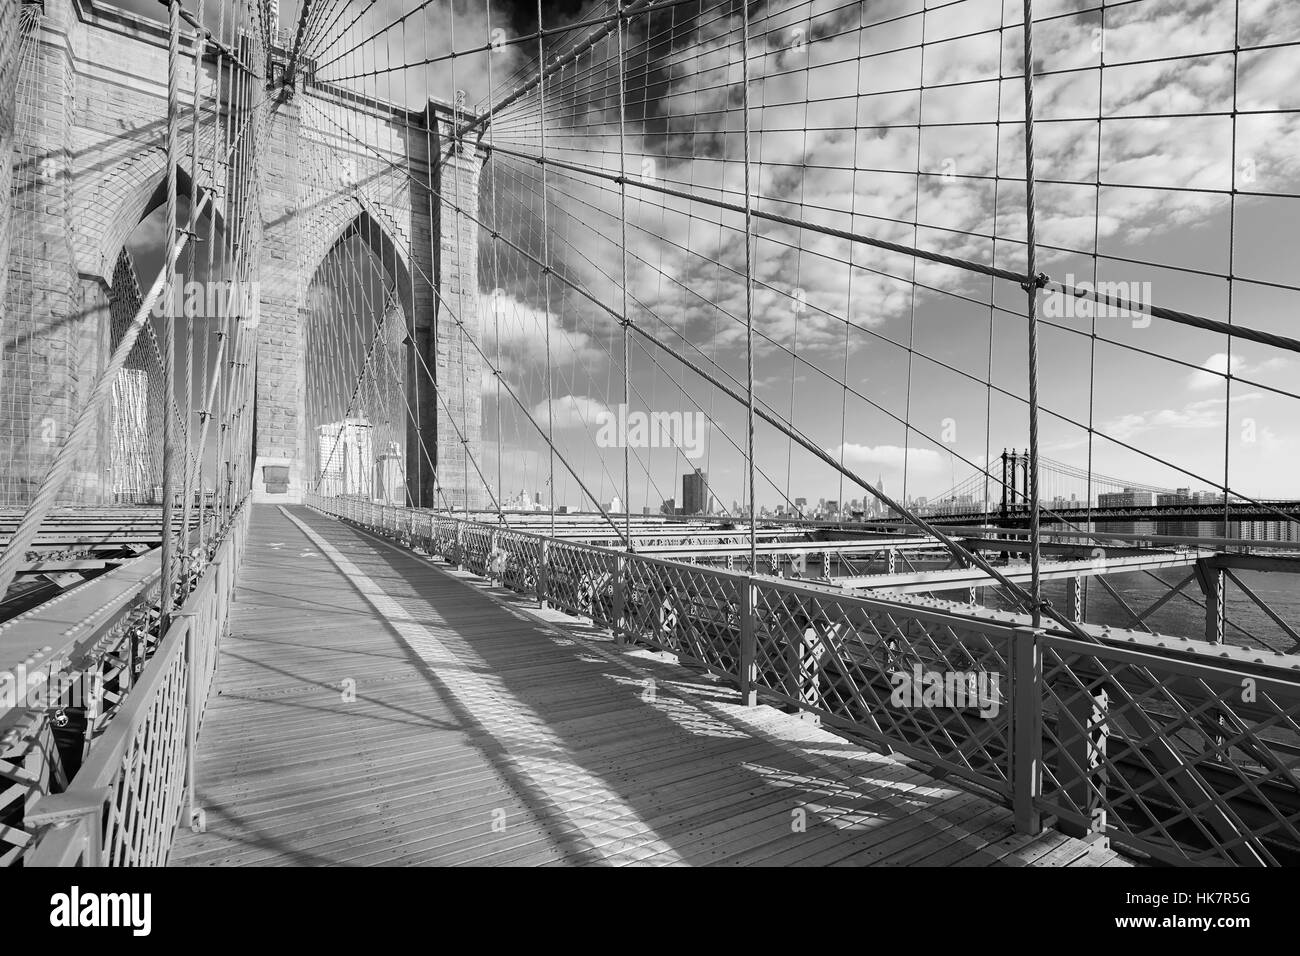 Sentier du pont de Brooklyn vide dans une journée ensoleillée, New York en noir et blanc Banque D'Images